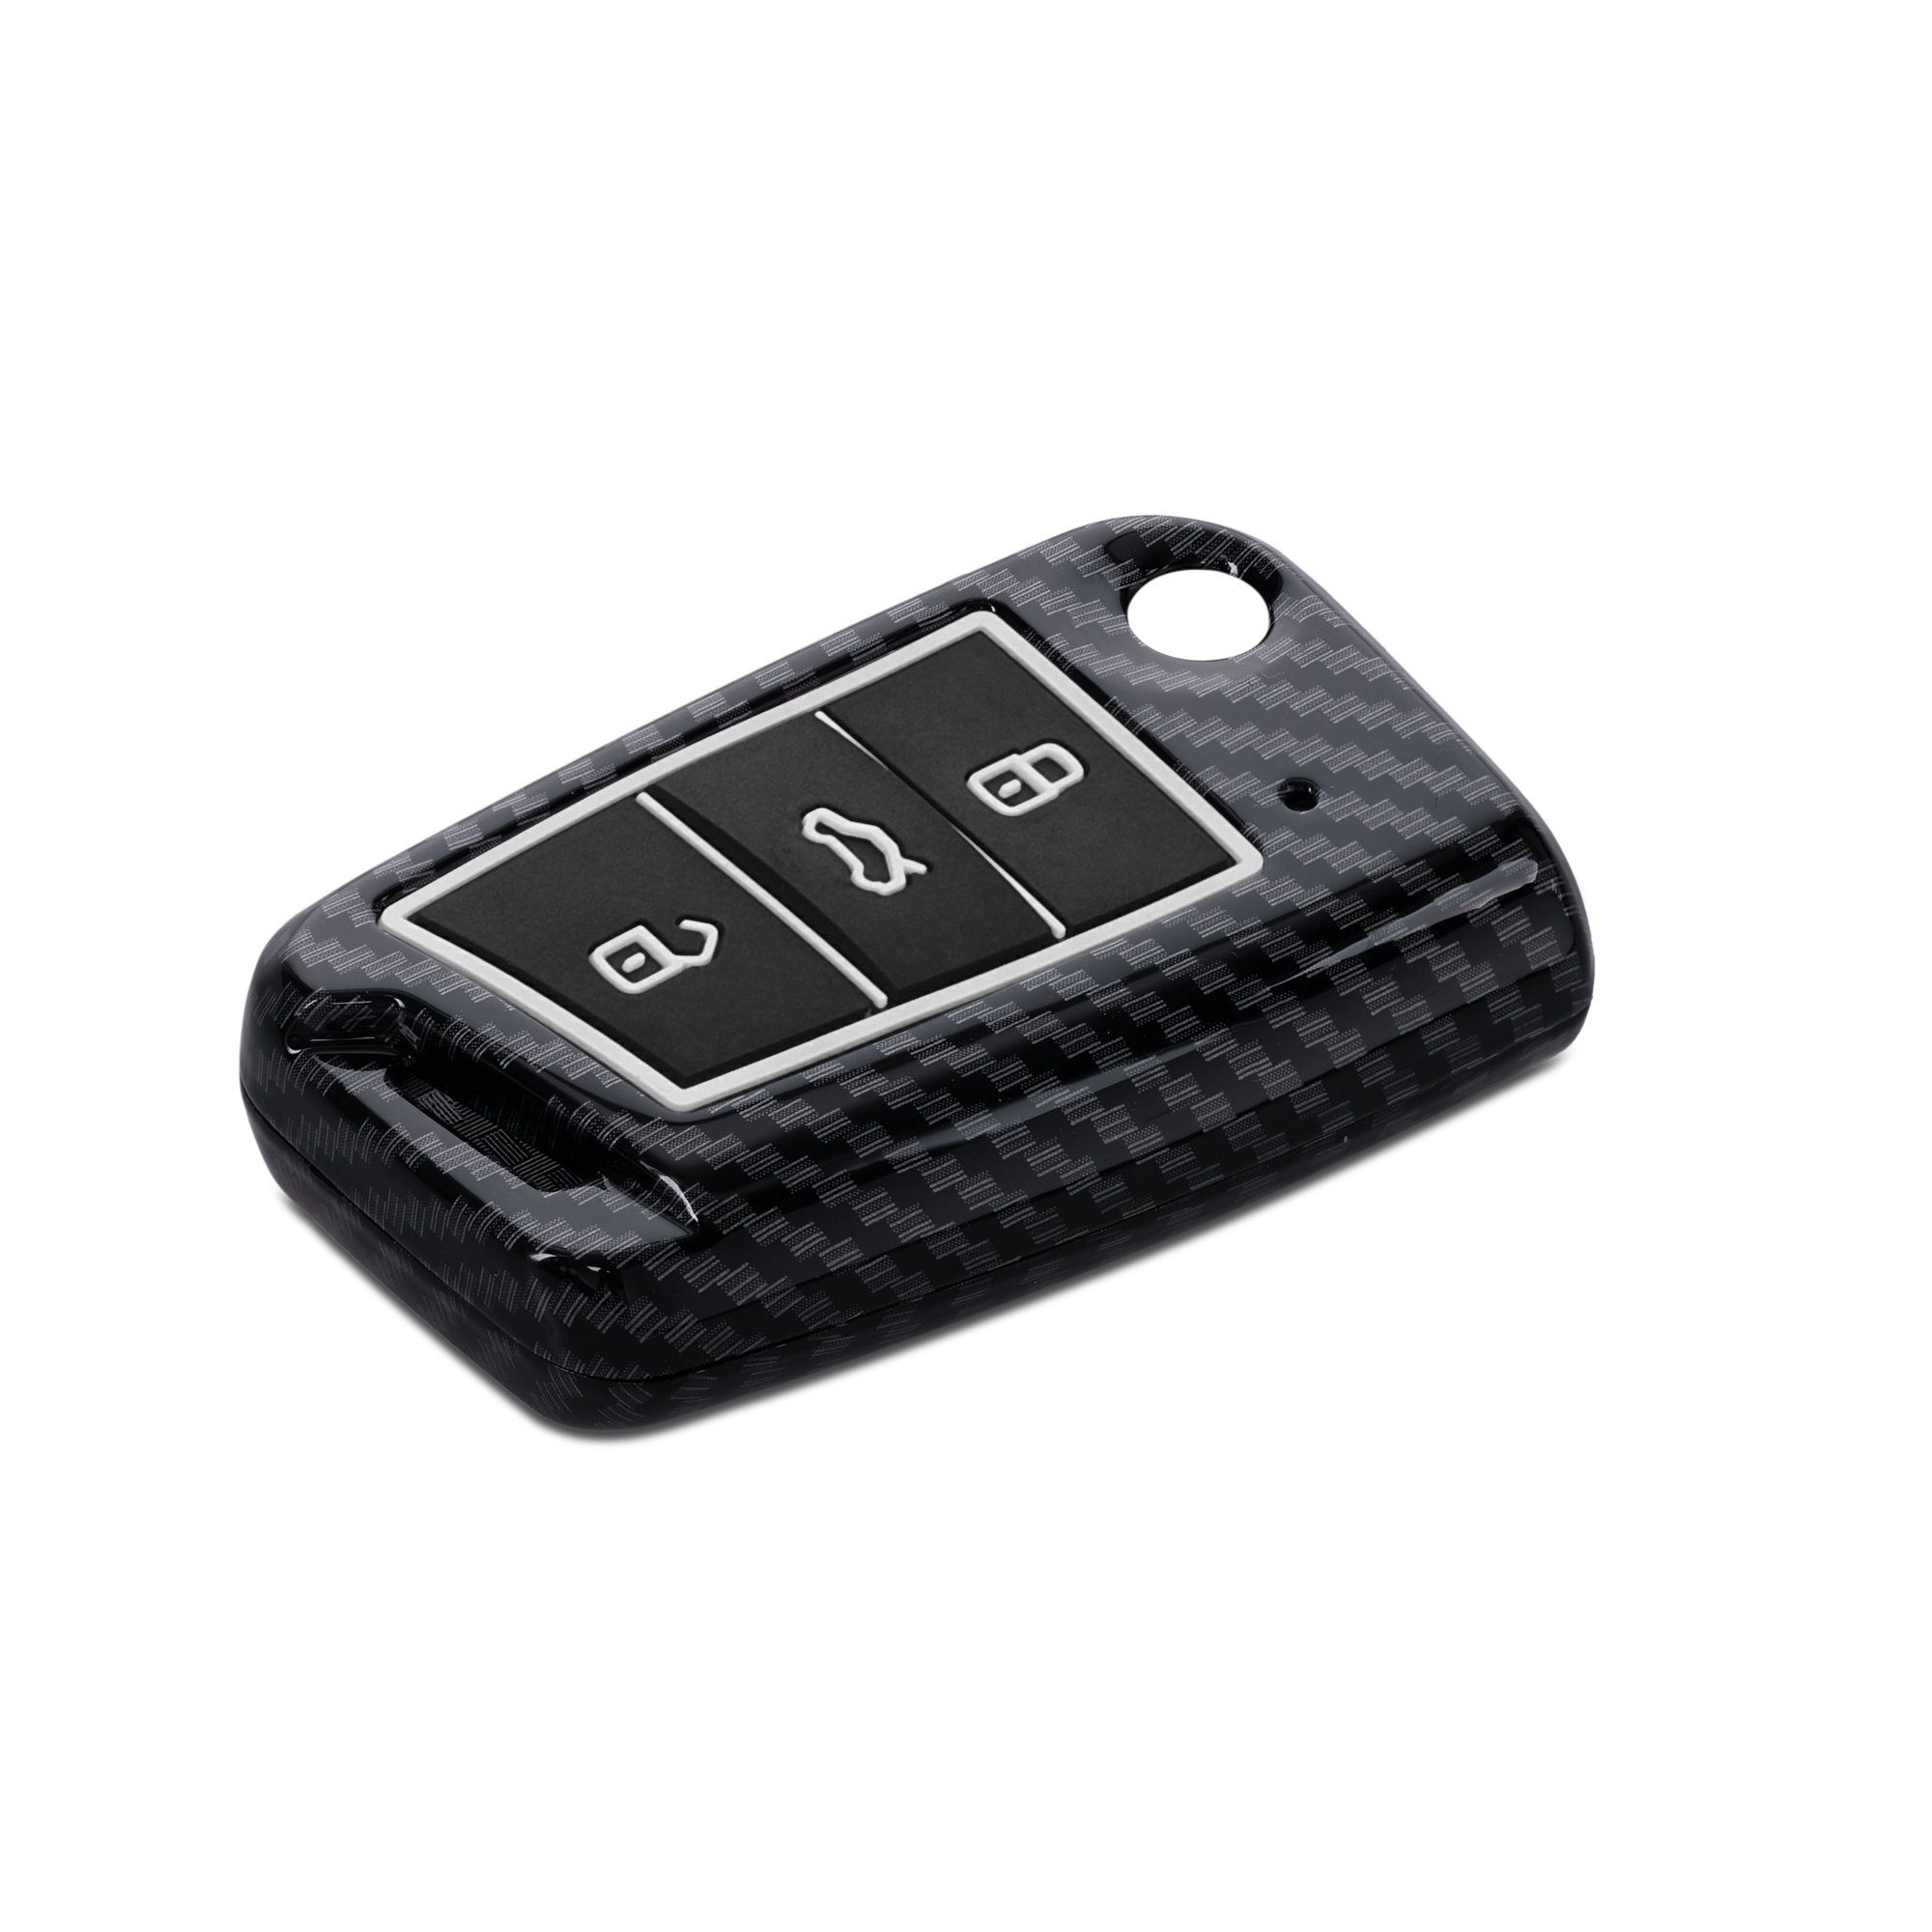 kwmobile Schlüsseltasche Autoschlüssel Hülle für MK7, VW Schlüsselhülle 7 Cover Golf - Schutzhülle Hardcover Schwarz Case